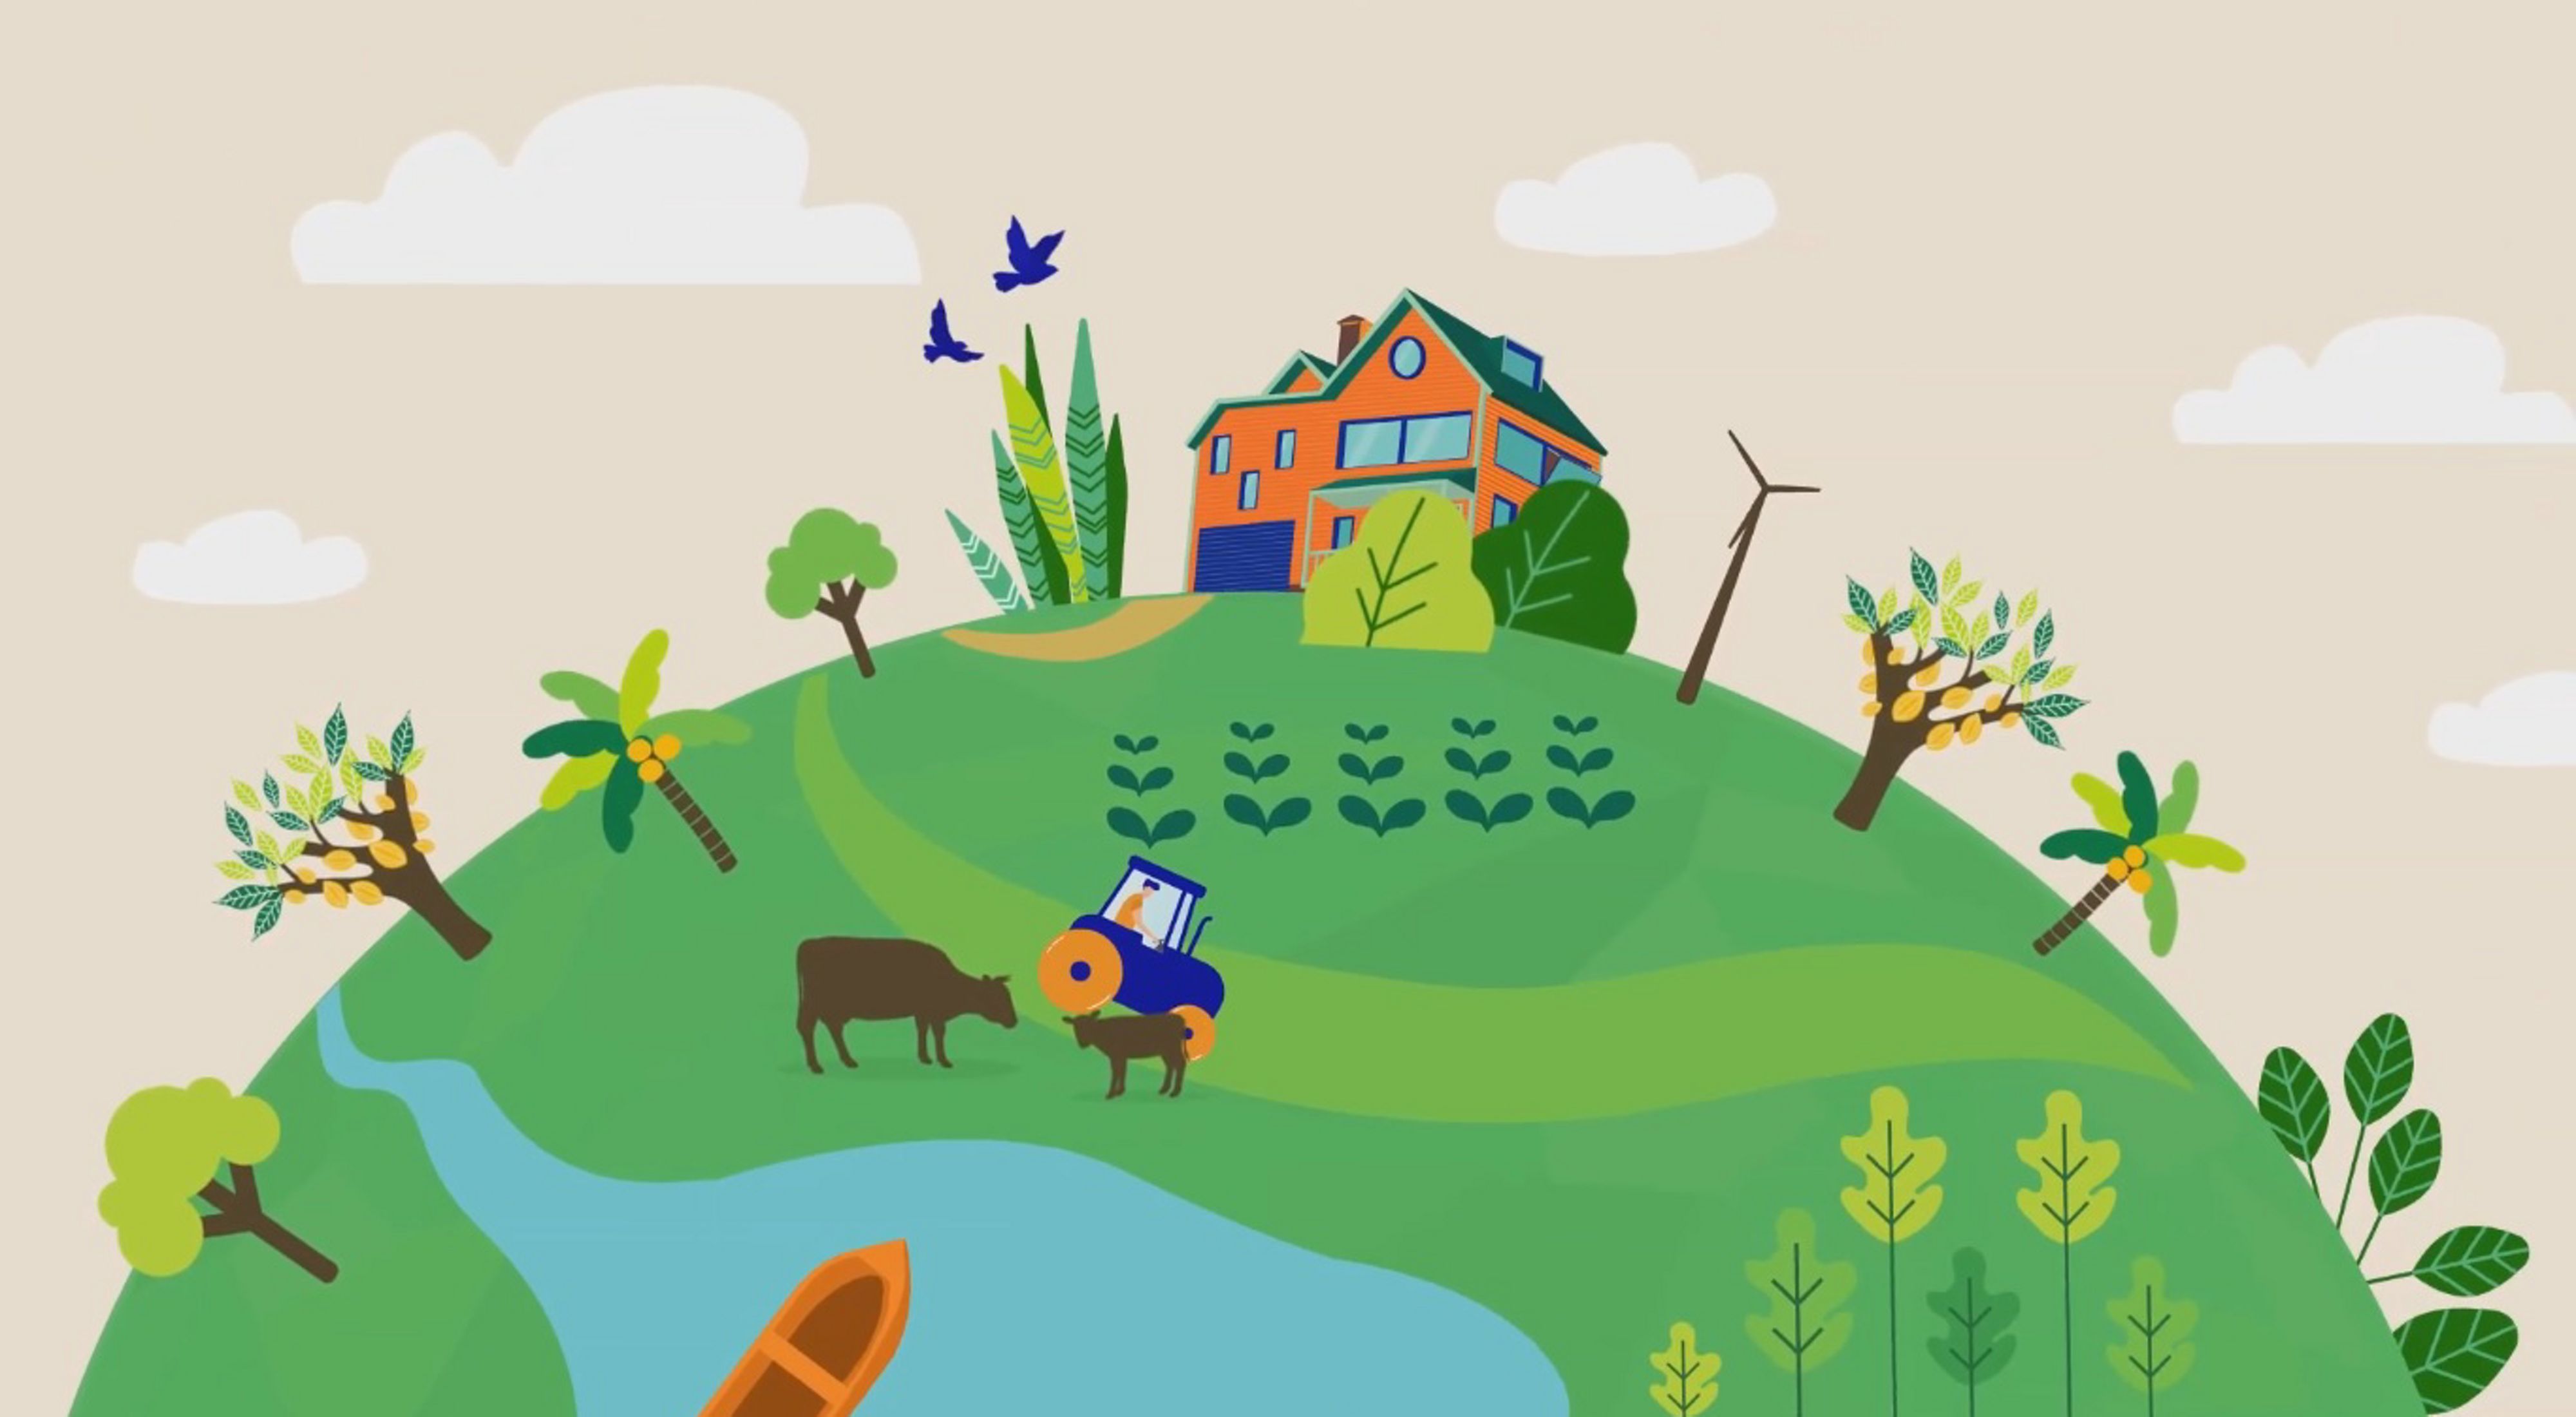 Imagem do vídeo sobre o Plano de Regularização Ambiental.